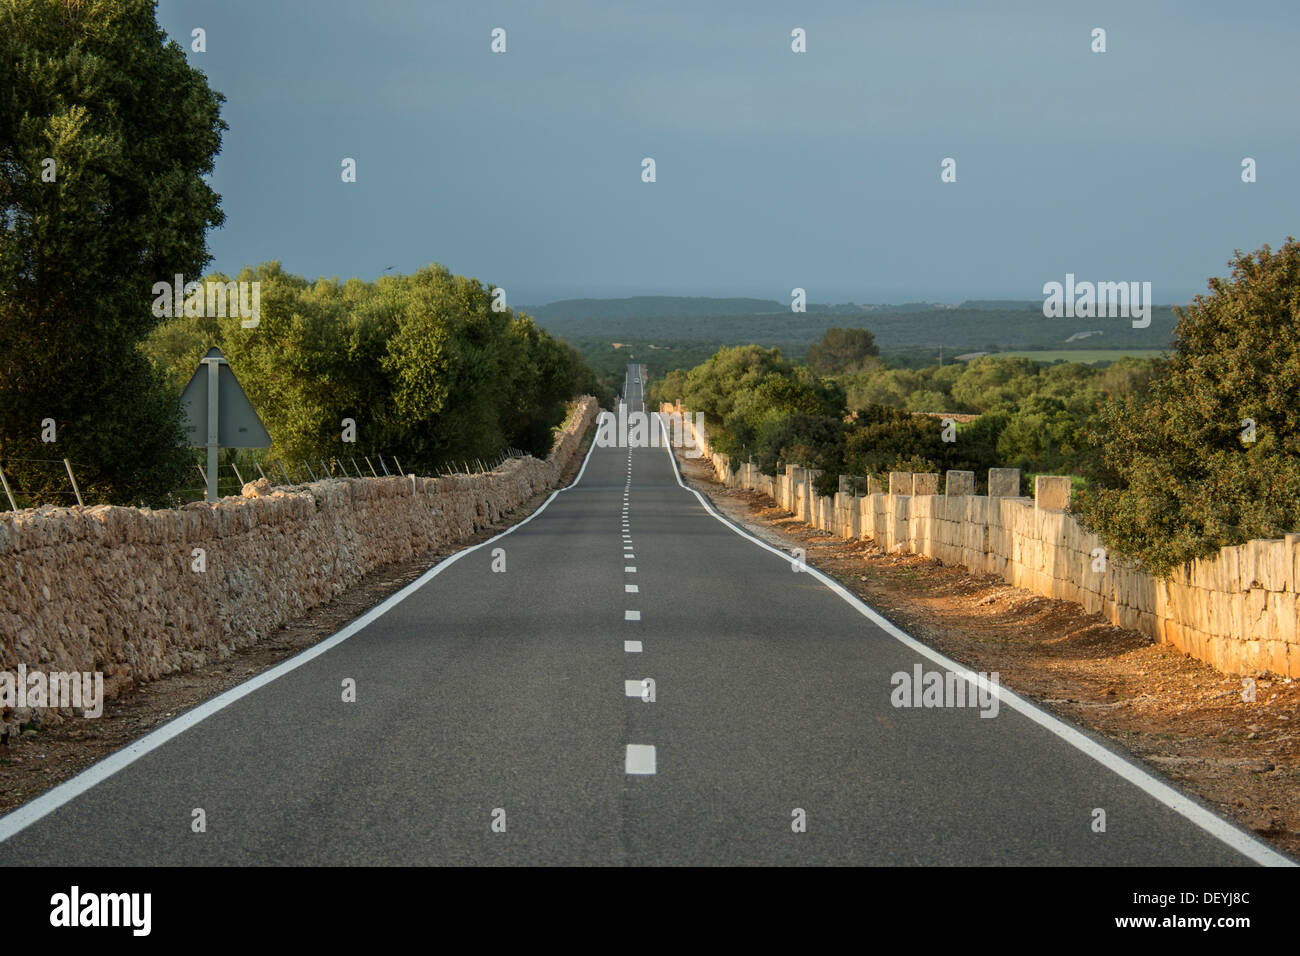 Strada e paesaggio con muri in pietra a secco, Manacor, Maiorca, isole Baleari, Spagna Foto Stock